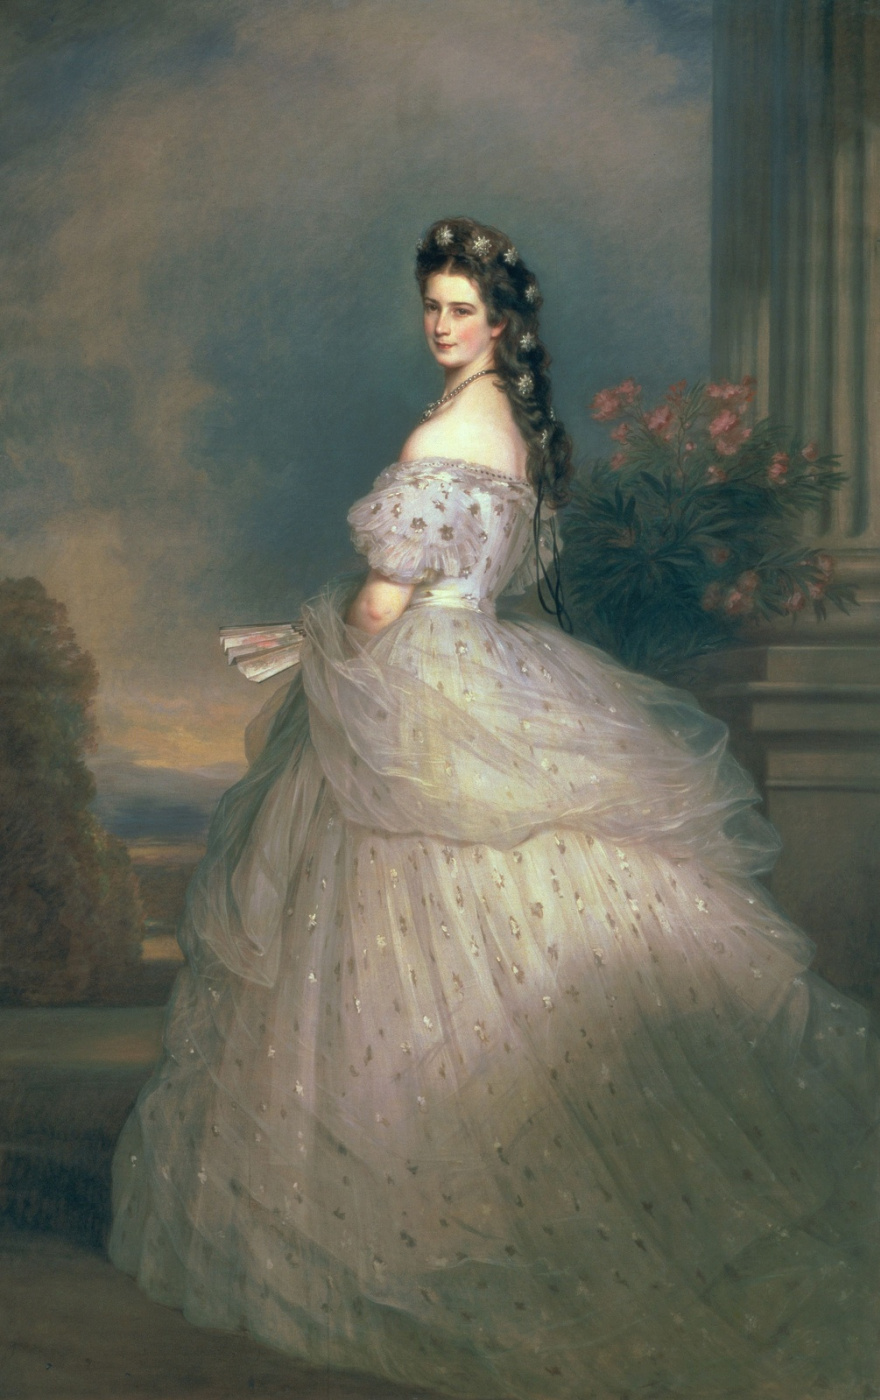 Франц Ксавер Винтерхальтер. Елизавета Баварская, императрица Австрии, жена императора Франца-Иосифа, в парадном платье с алмазными звездами